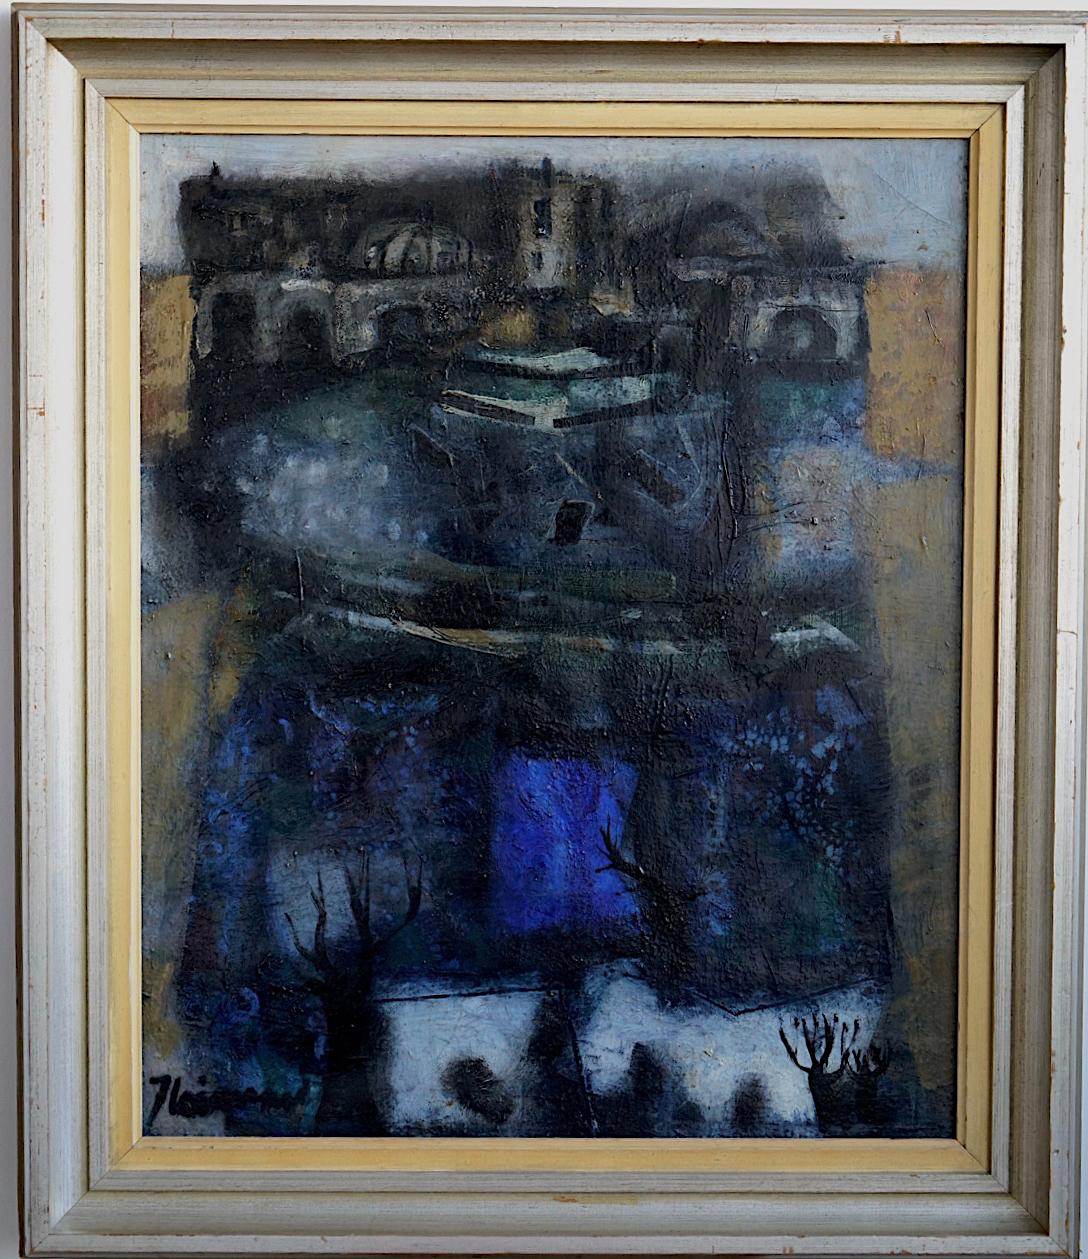 Paysage urbain peint à l'huile sur toile par James Coignard, France (1925-2008).
Signé et encadré. Début de la période.
Taille de la toile 28.5